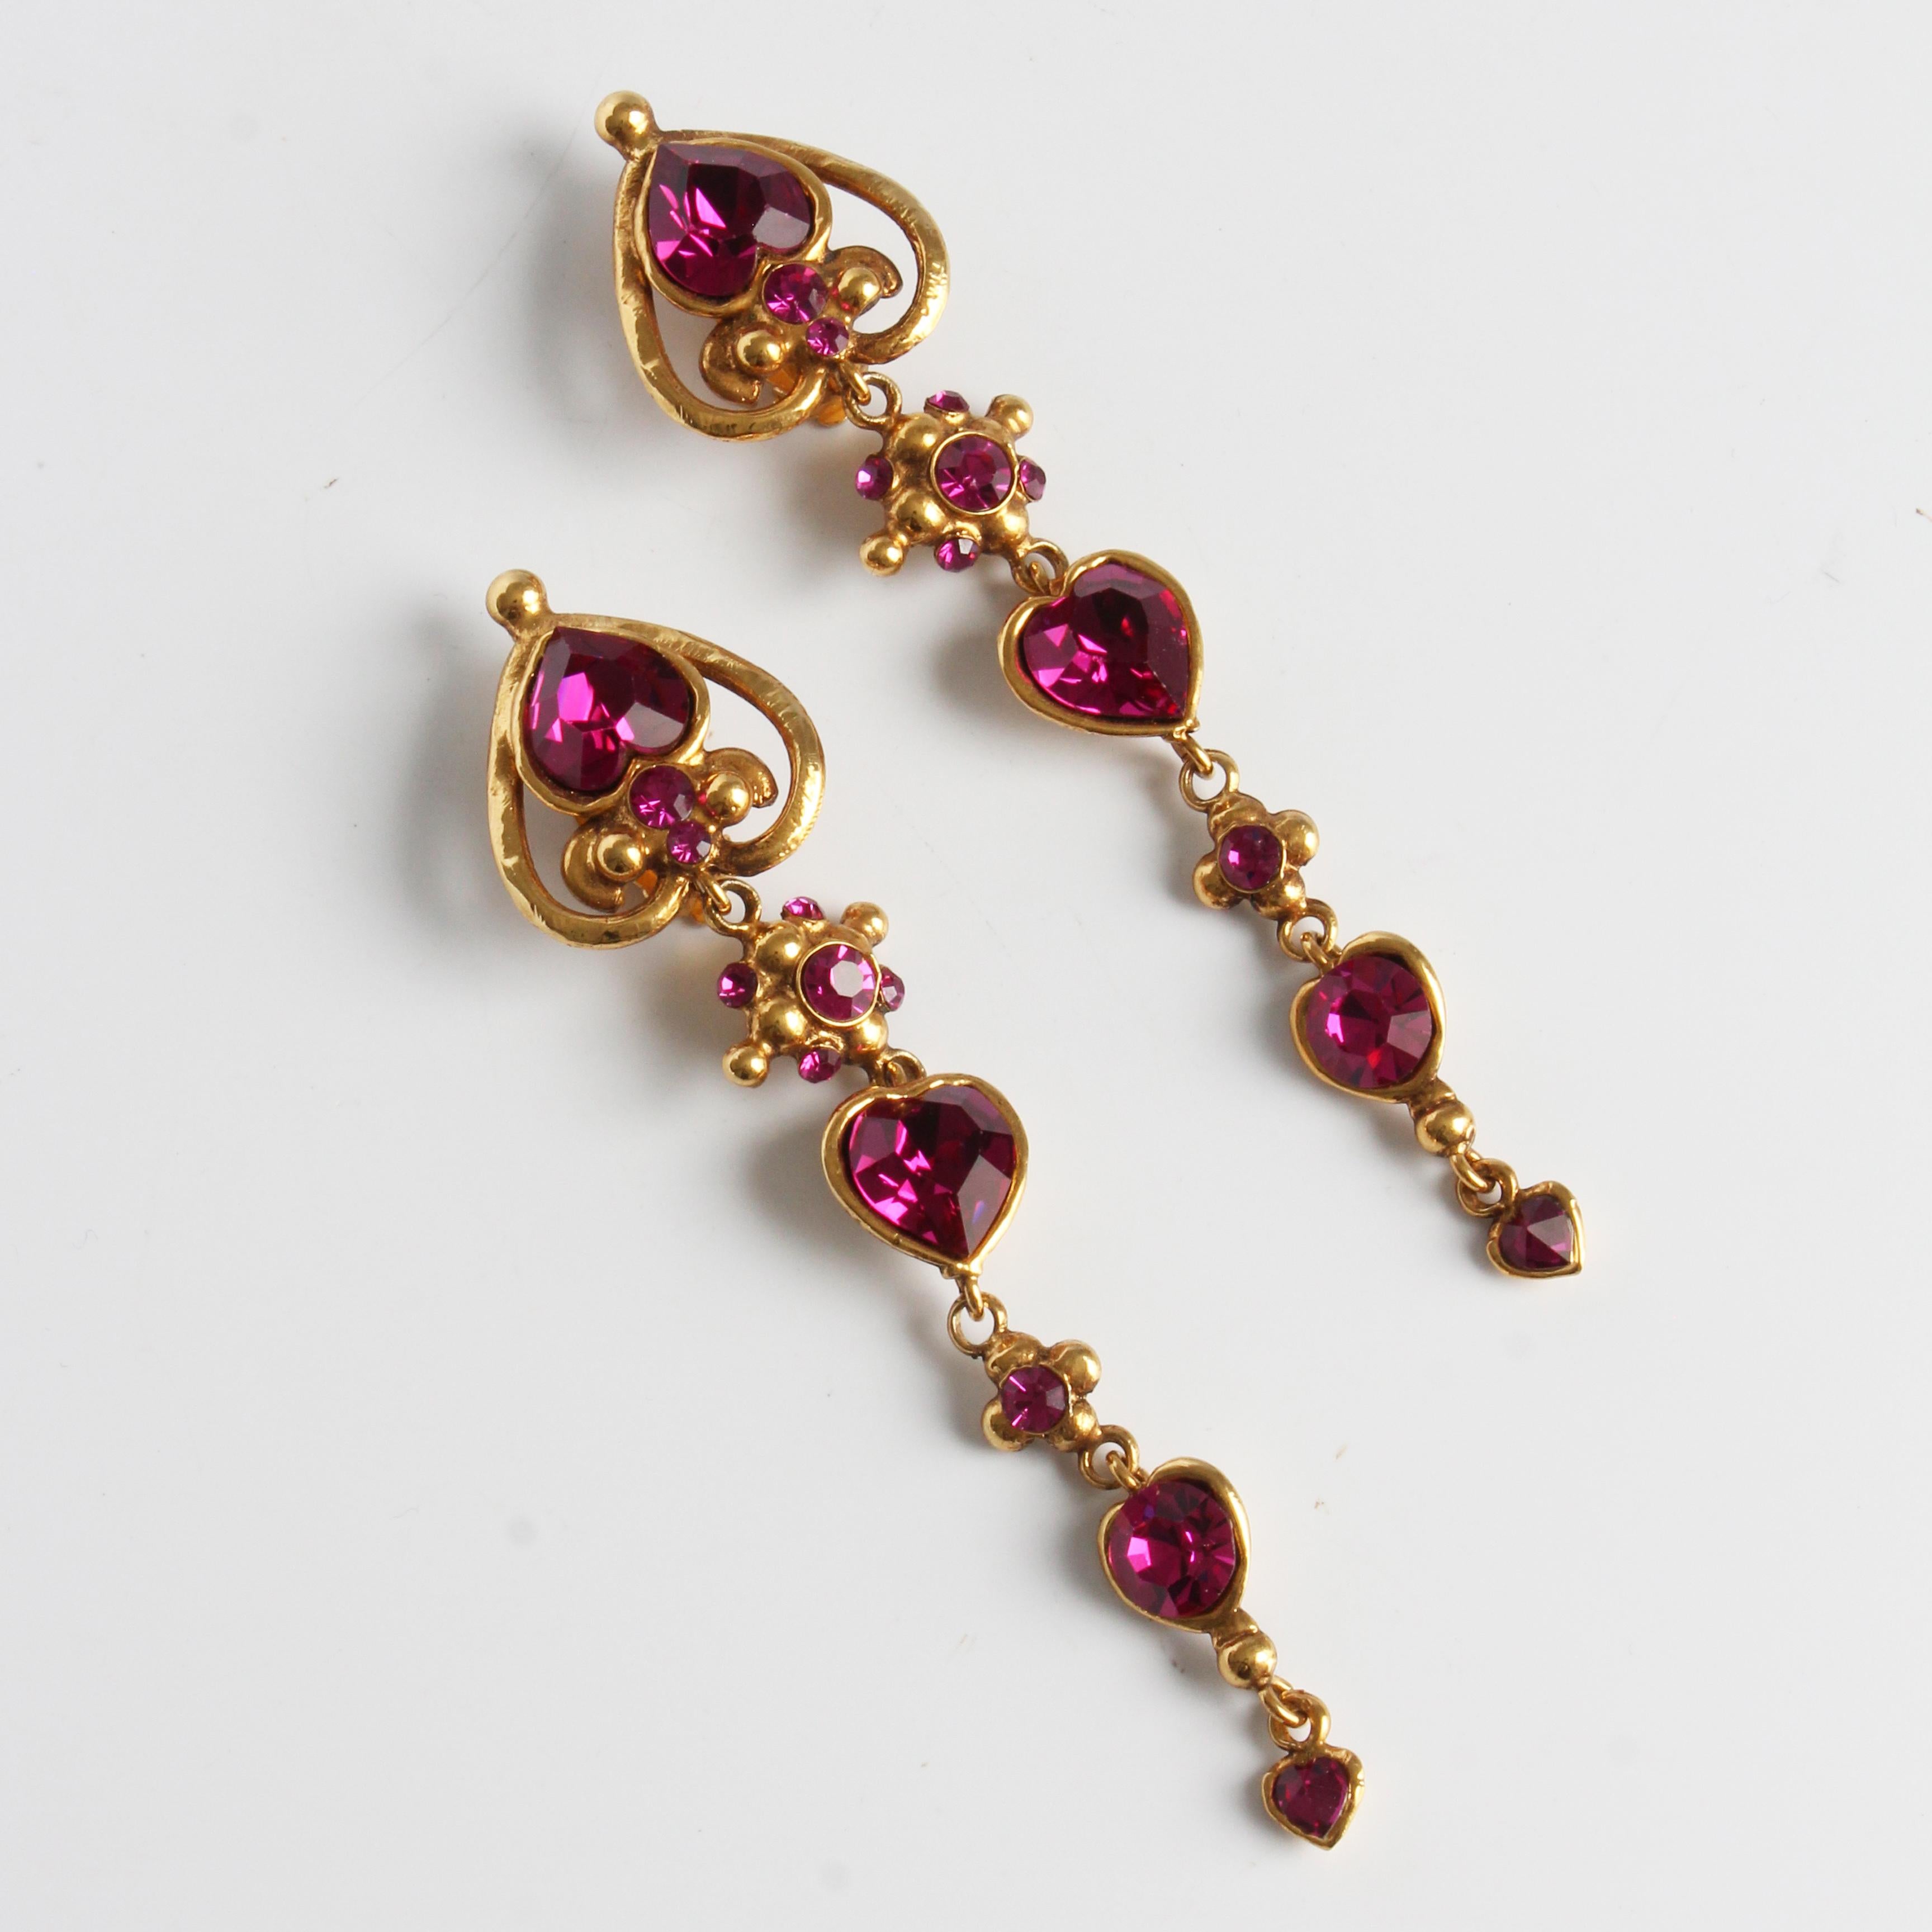 Authentische, gebrauchte, lange Ohrringe, hergestellt von Emanuel Ungaro Paris, wahrscheinlich in den 80er Jahren.  Diese Ohrringe im Barockstil sind aus goldenem Metall gefertigt und mit rosafarbenen Steinen besetzt, die in gewissem Licht funkeln! 